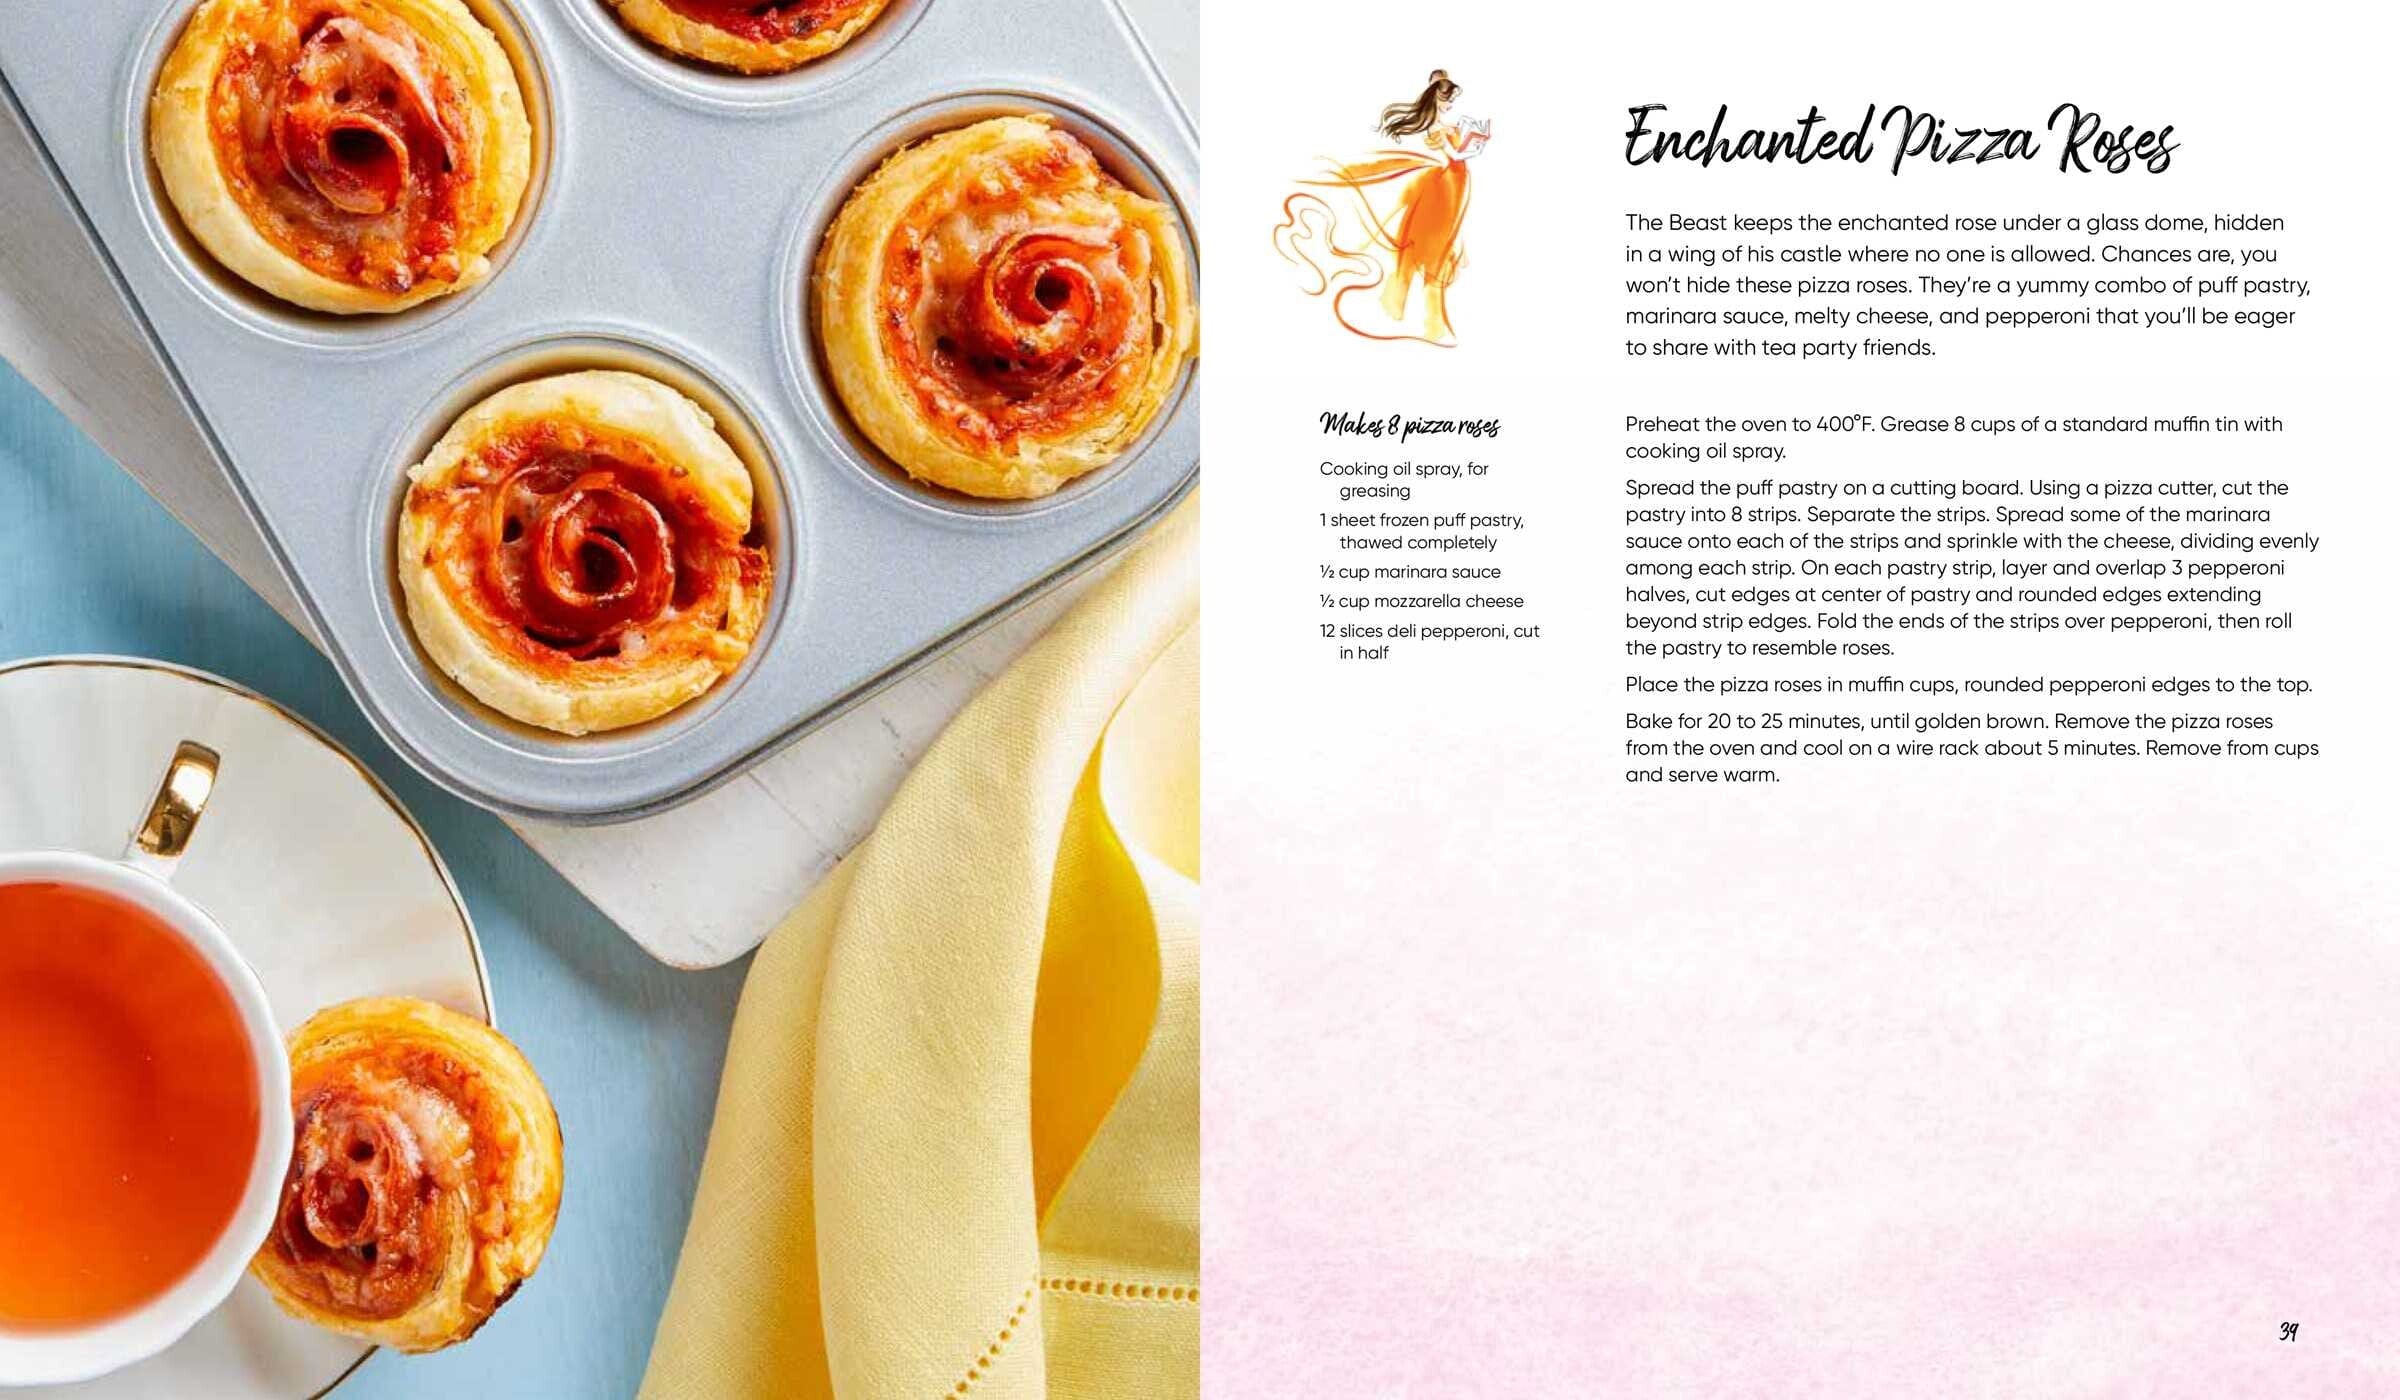 Simon & Schuster Disney Princess Tea Parties Cookbook - Little Miss Muffin Children & Home